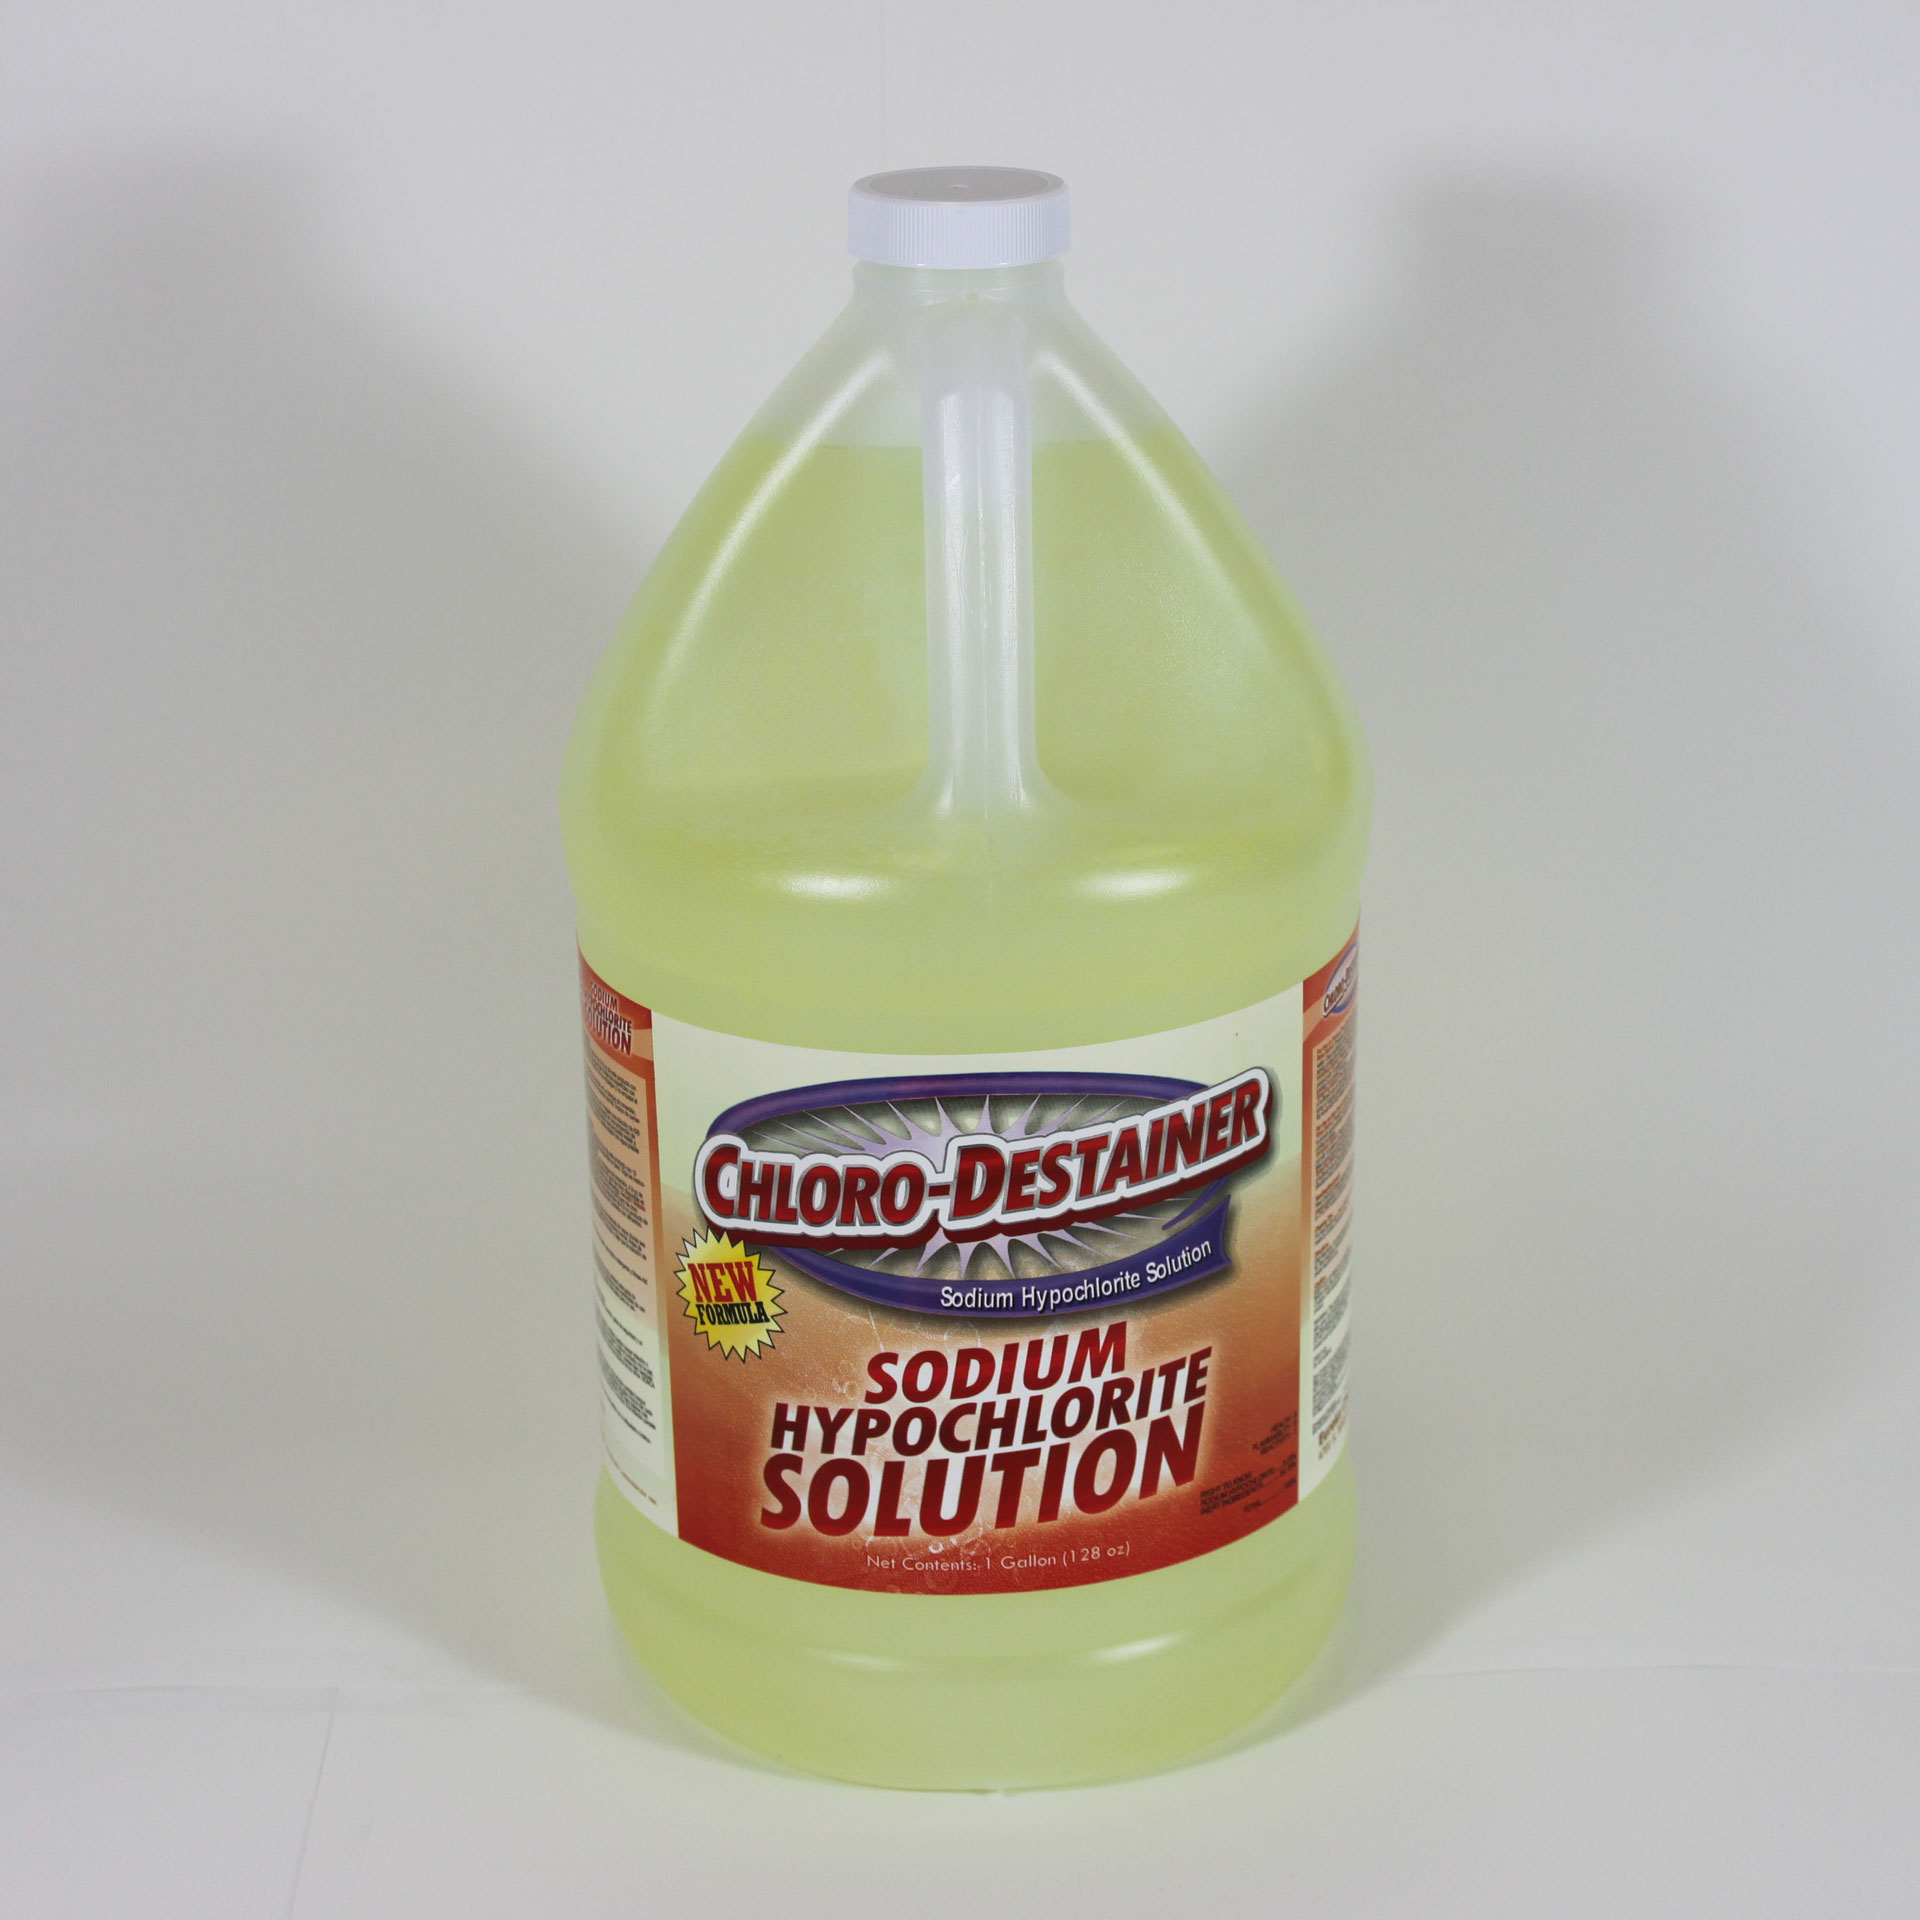 Bottle of Chloro-Destainer solution.